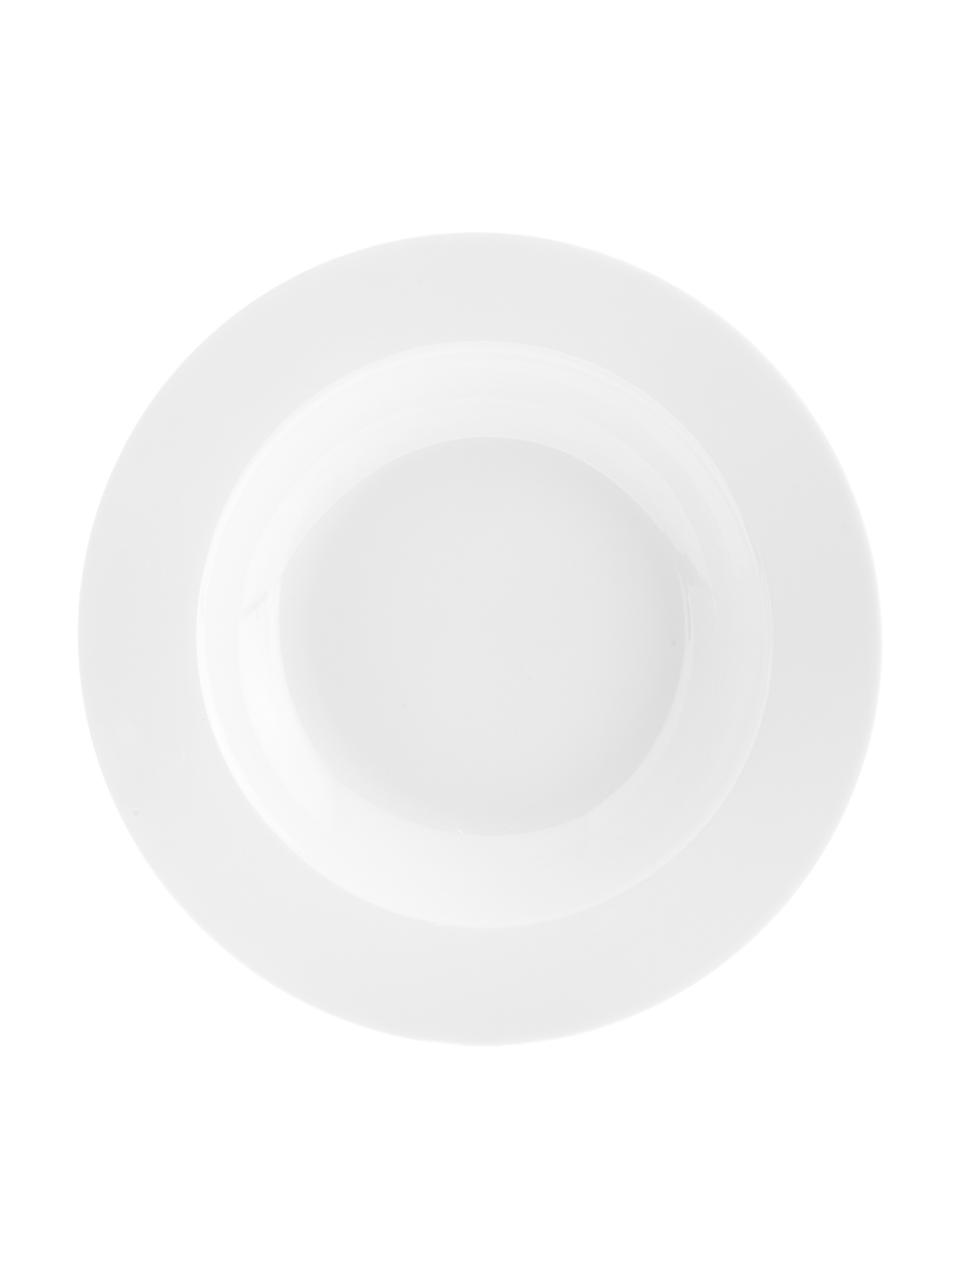 Porzellan-Suppenteller Delight Classic in Weiß, 2 Stück, Porzellan, Weiß, Ø 23 x H 4 cm